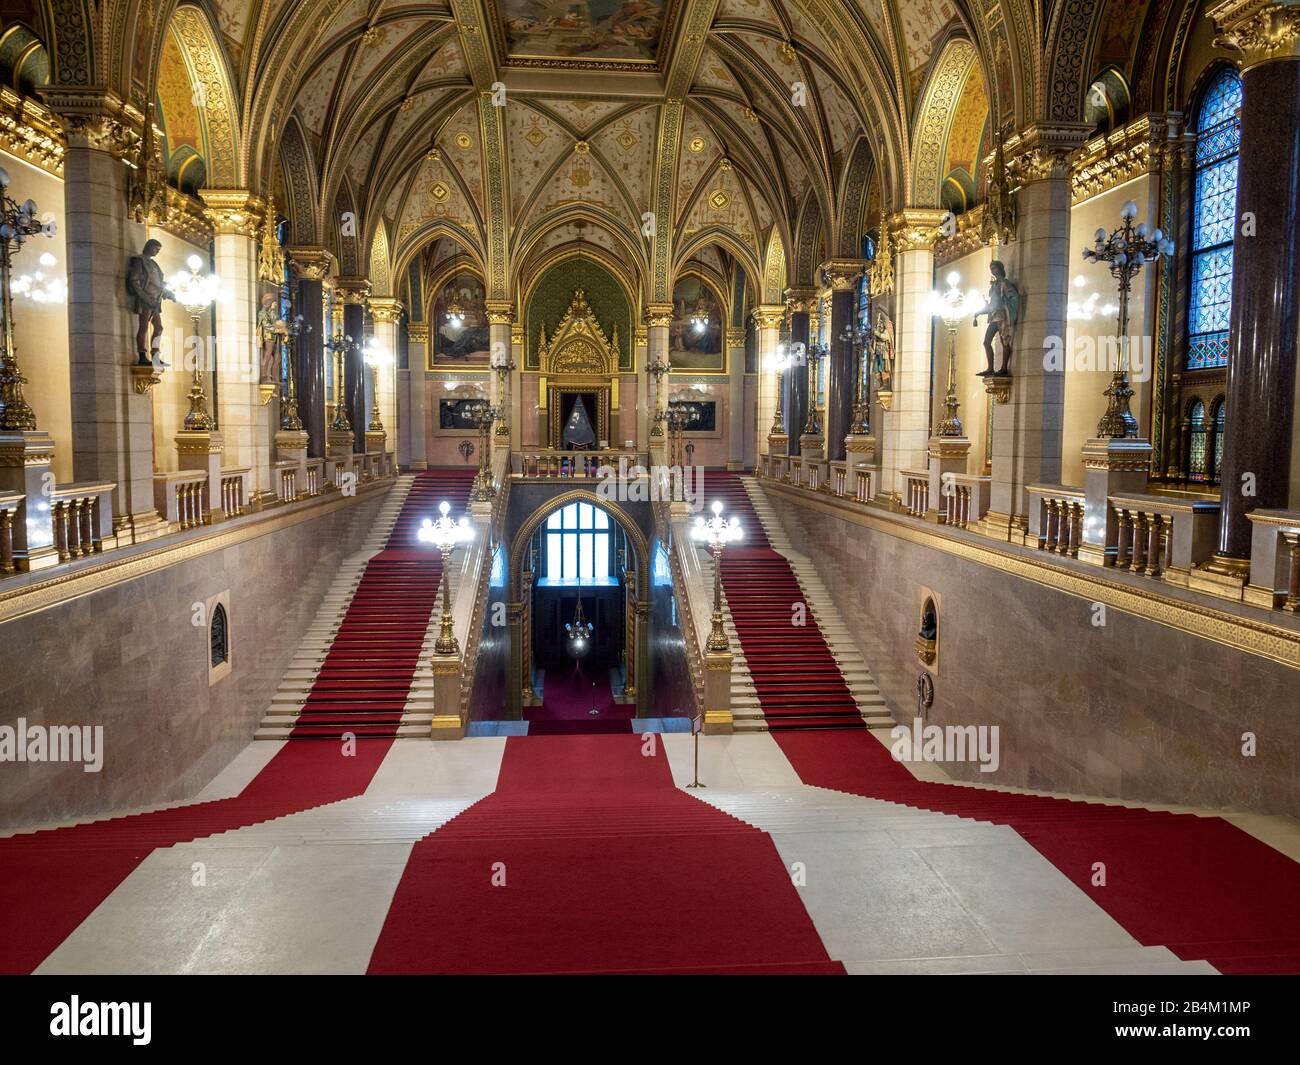 Ungarische Parlamentsgebäude Grand Staircase: Die große Treppe im hugarischen Parlament ist üppig mit Blattgold in der Decke dekoriert und mit roten Läufern ausgelegt. Stockfoto